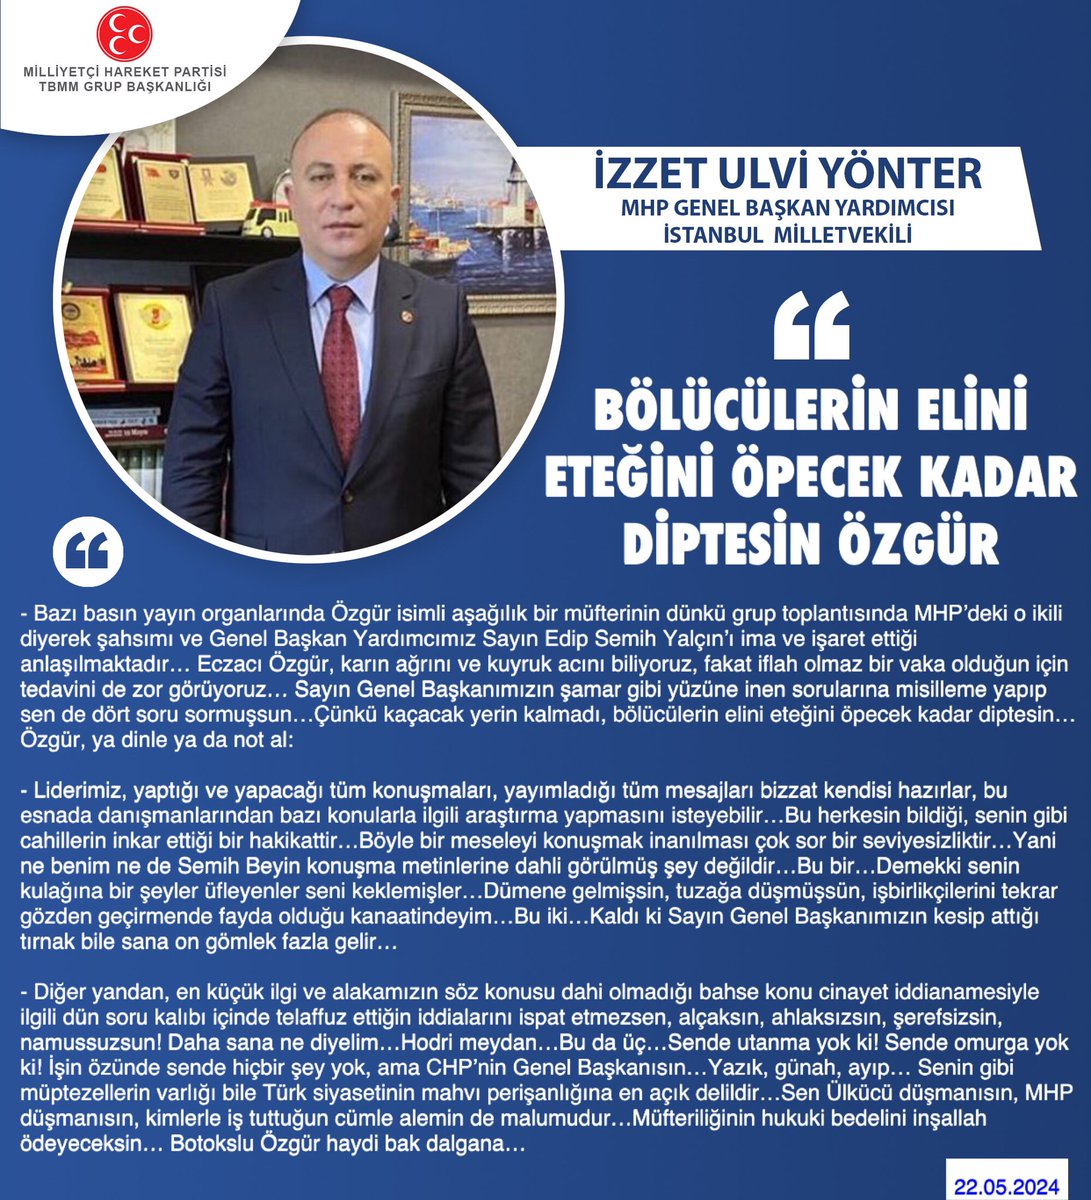 MHP Genel Başkan Yardımcısı ve İstanbul Milletvekilimiz Dr. İzzet Ulvi Yönter @UlviYonter: Bölücülerin elini eteğini öpecek kadar diptesin Özgür